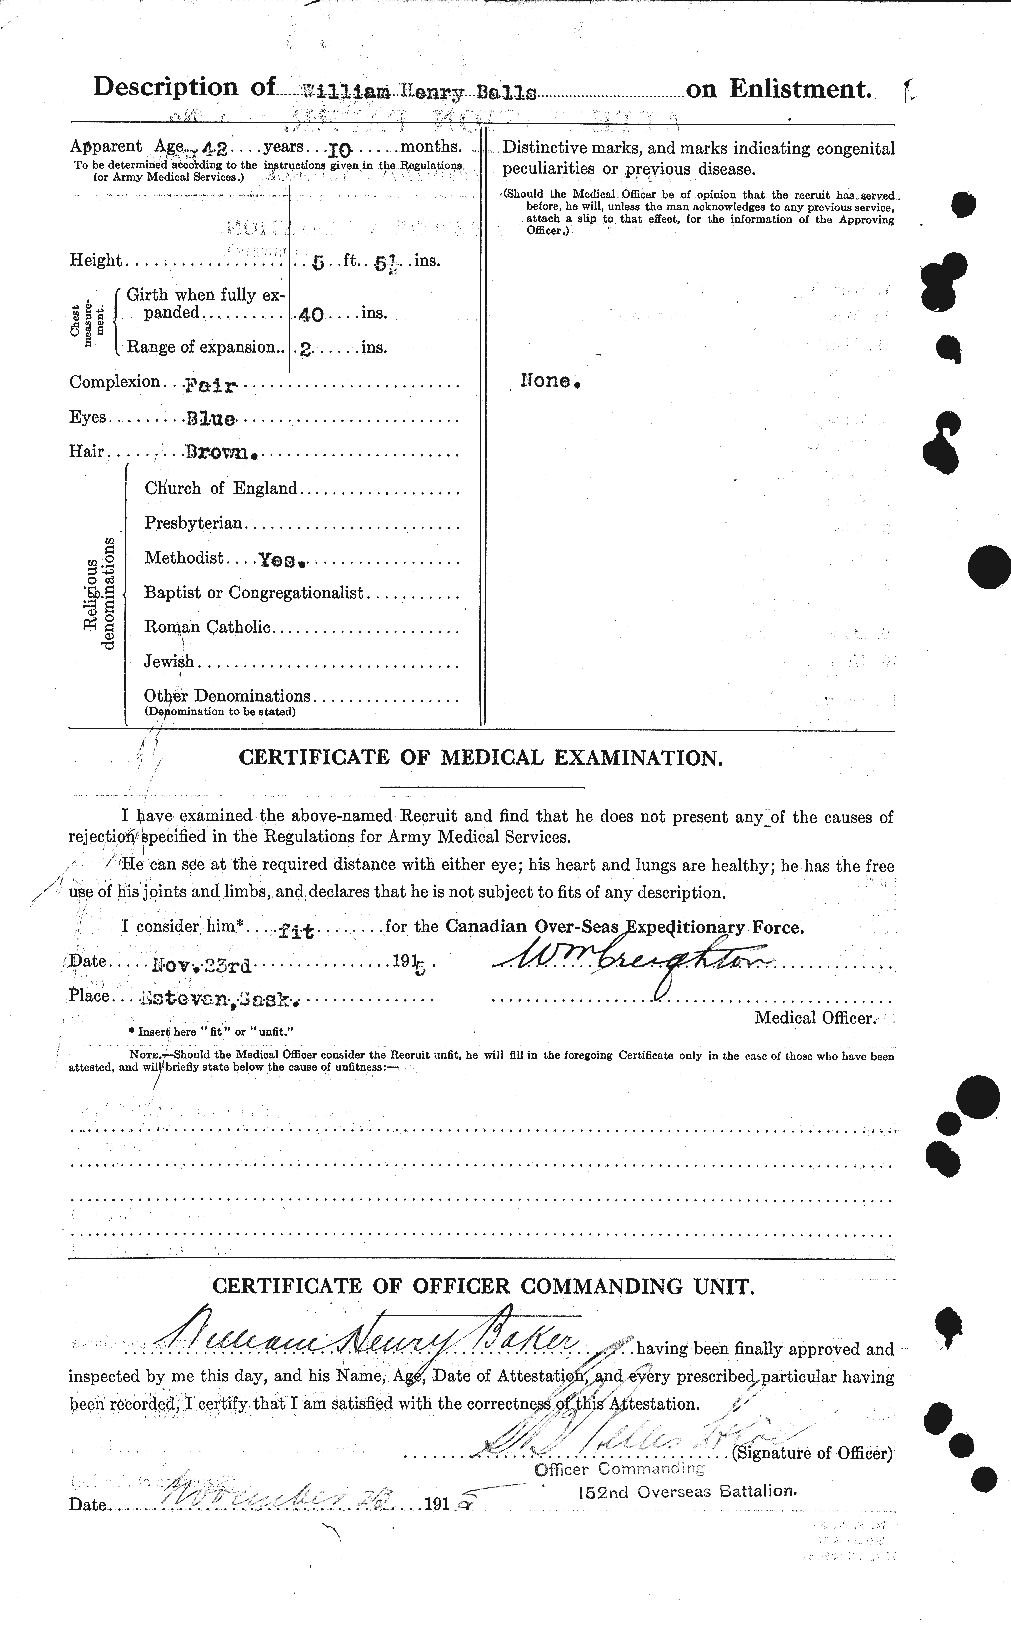 Dossiers du Personnel de la Première Guerre mondiale - CEC 219610b